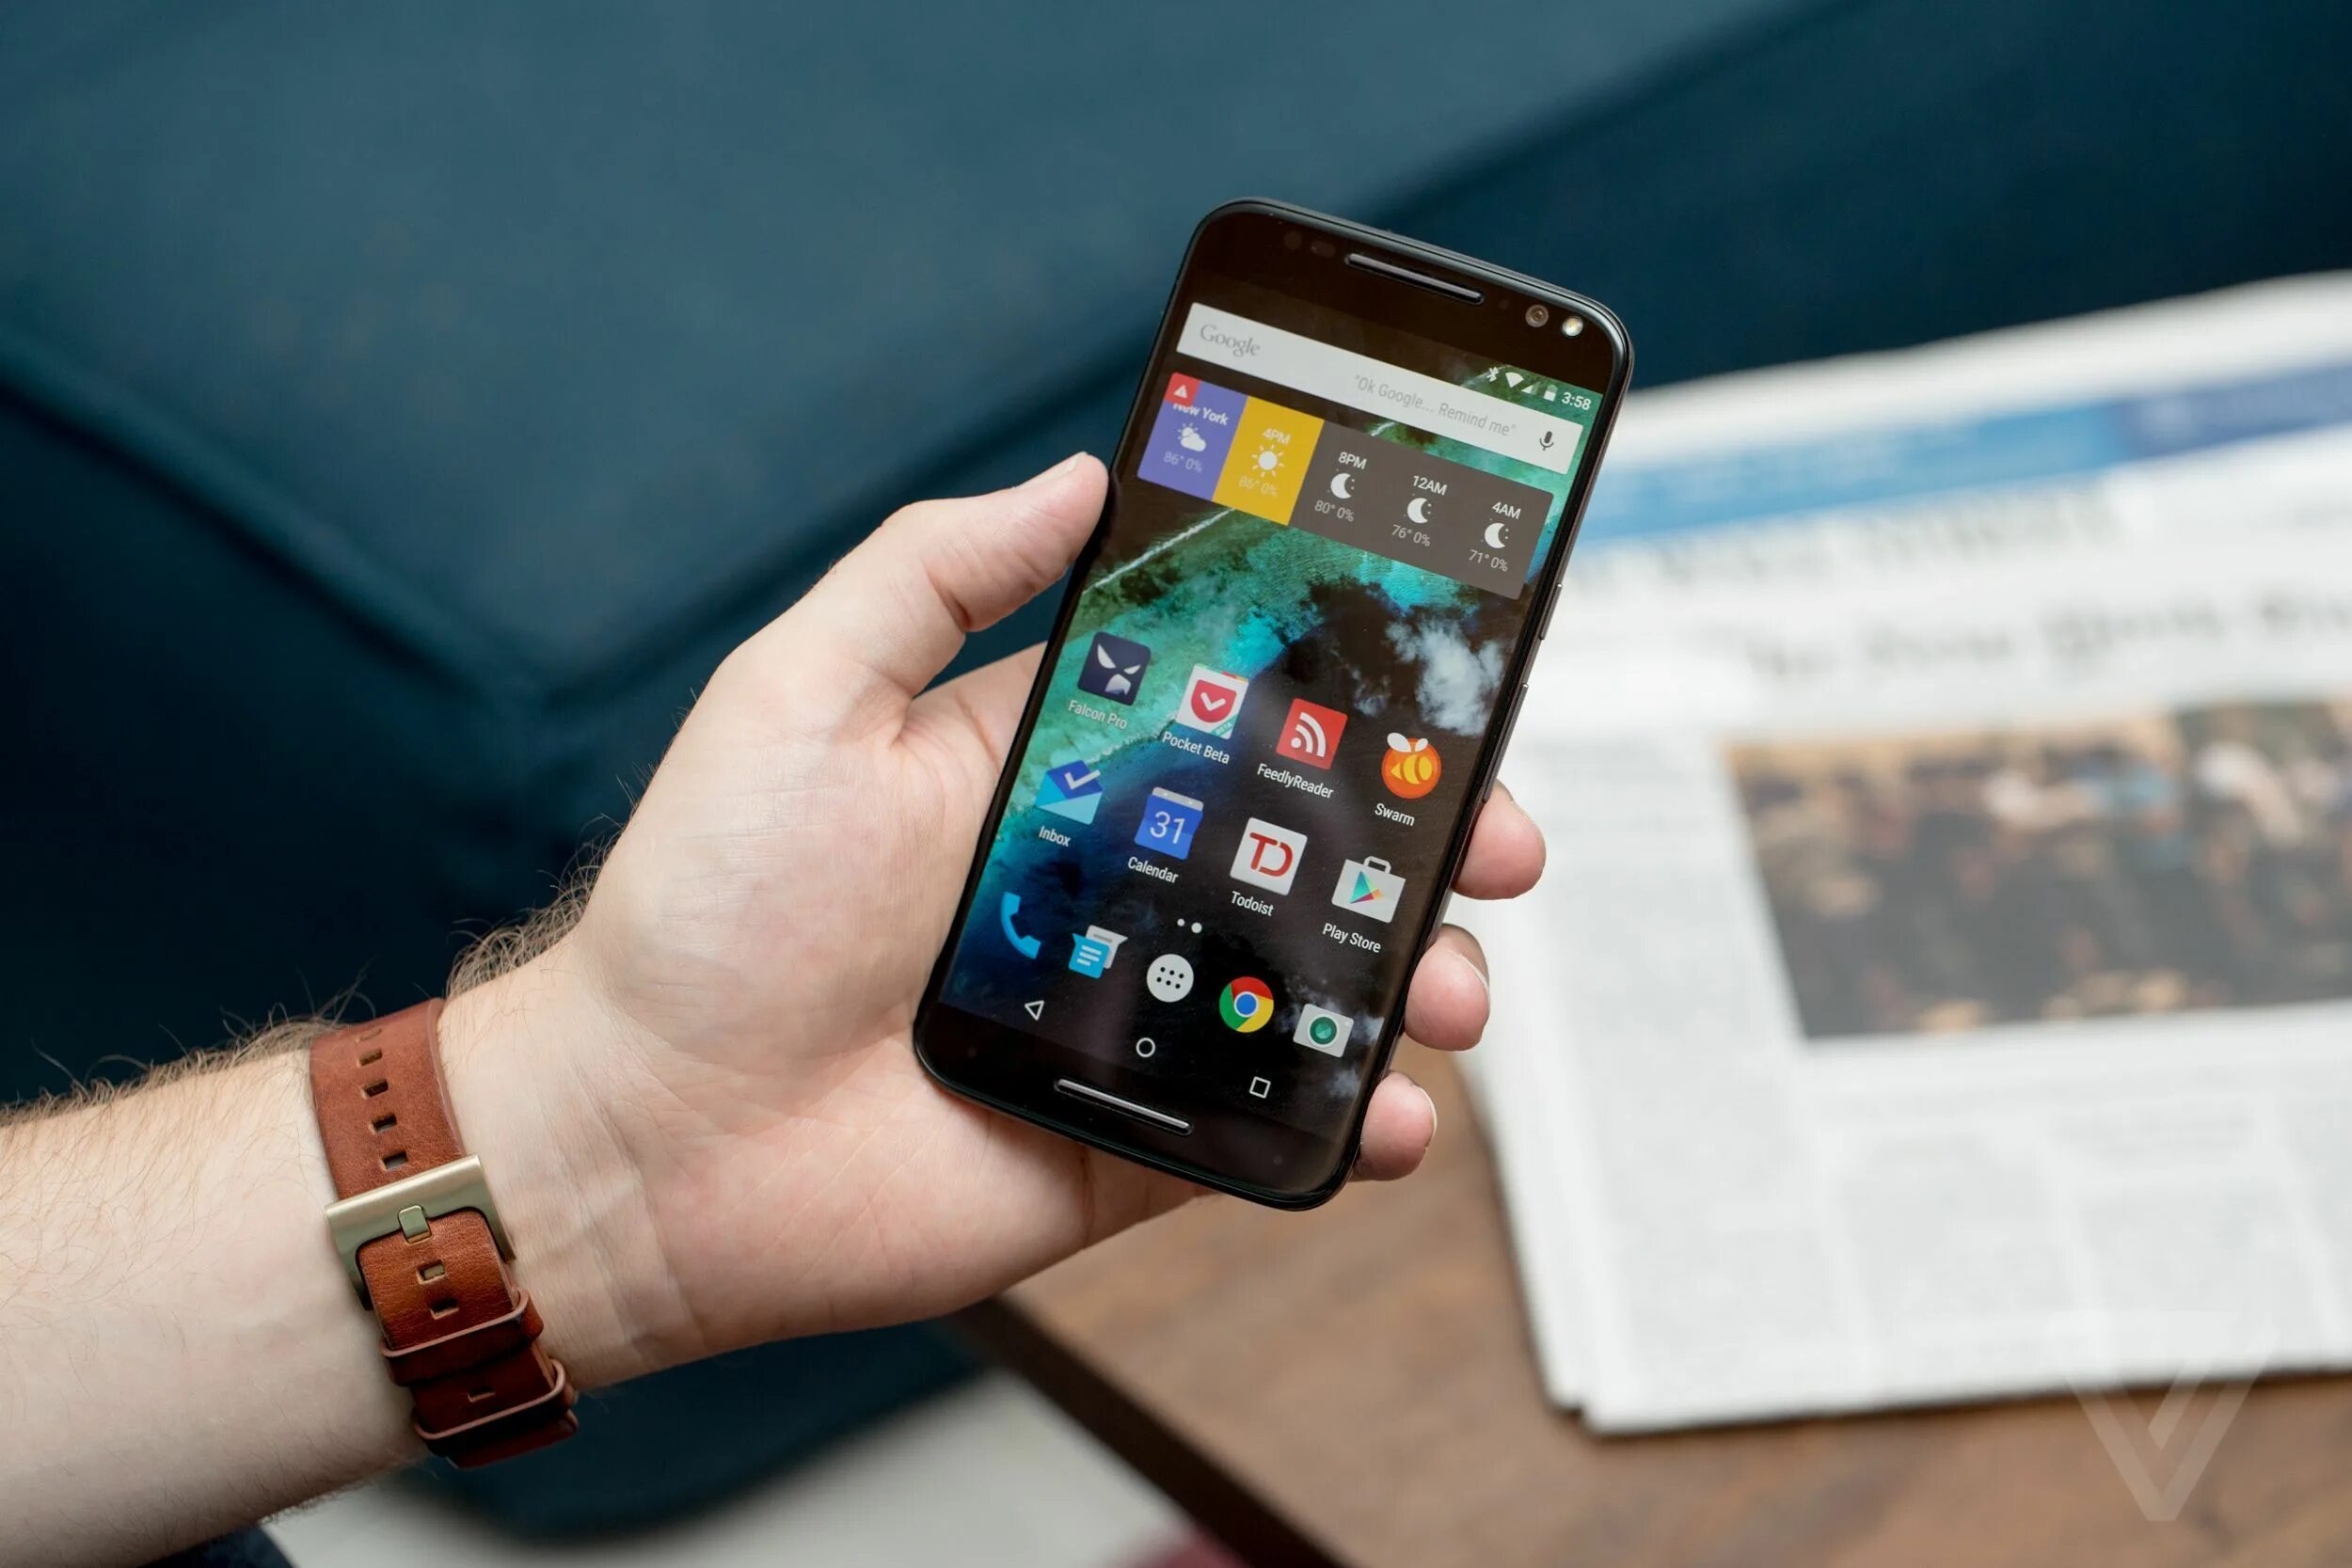 Up phones. Смартфон в руке. Смартфон андроид в руке. Новый смартфон в руке. Android смартфон в руке.